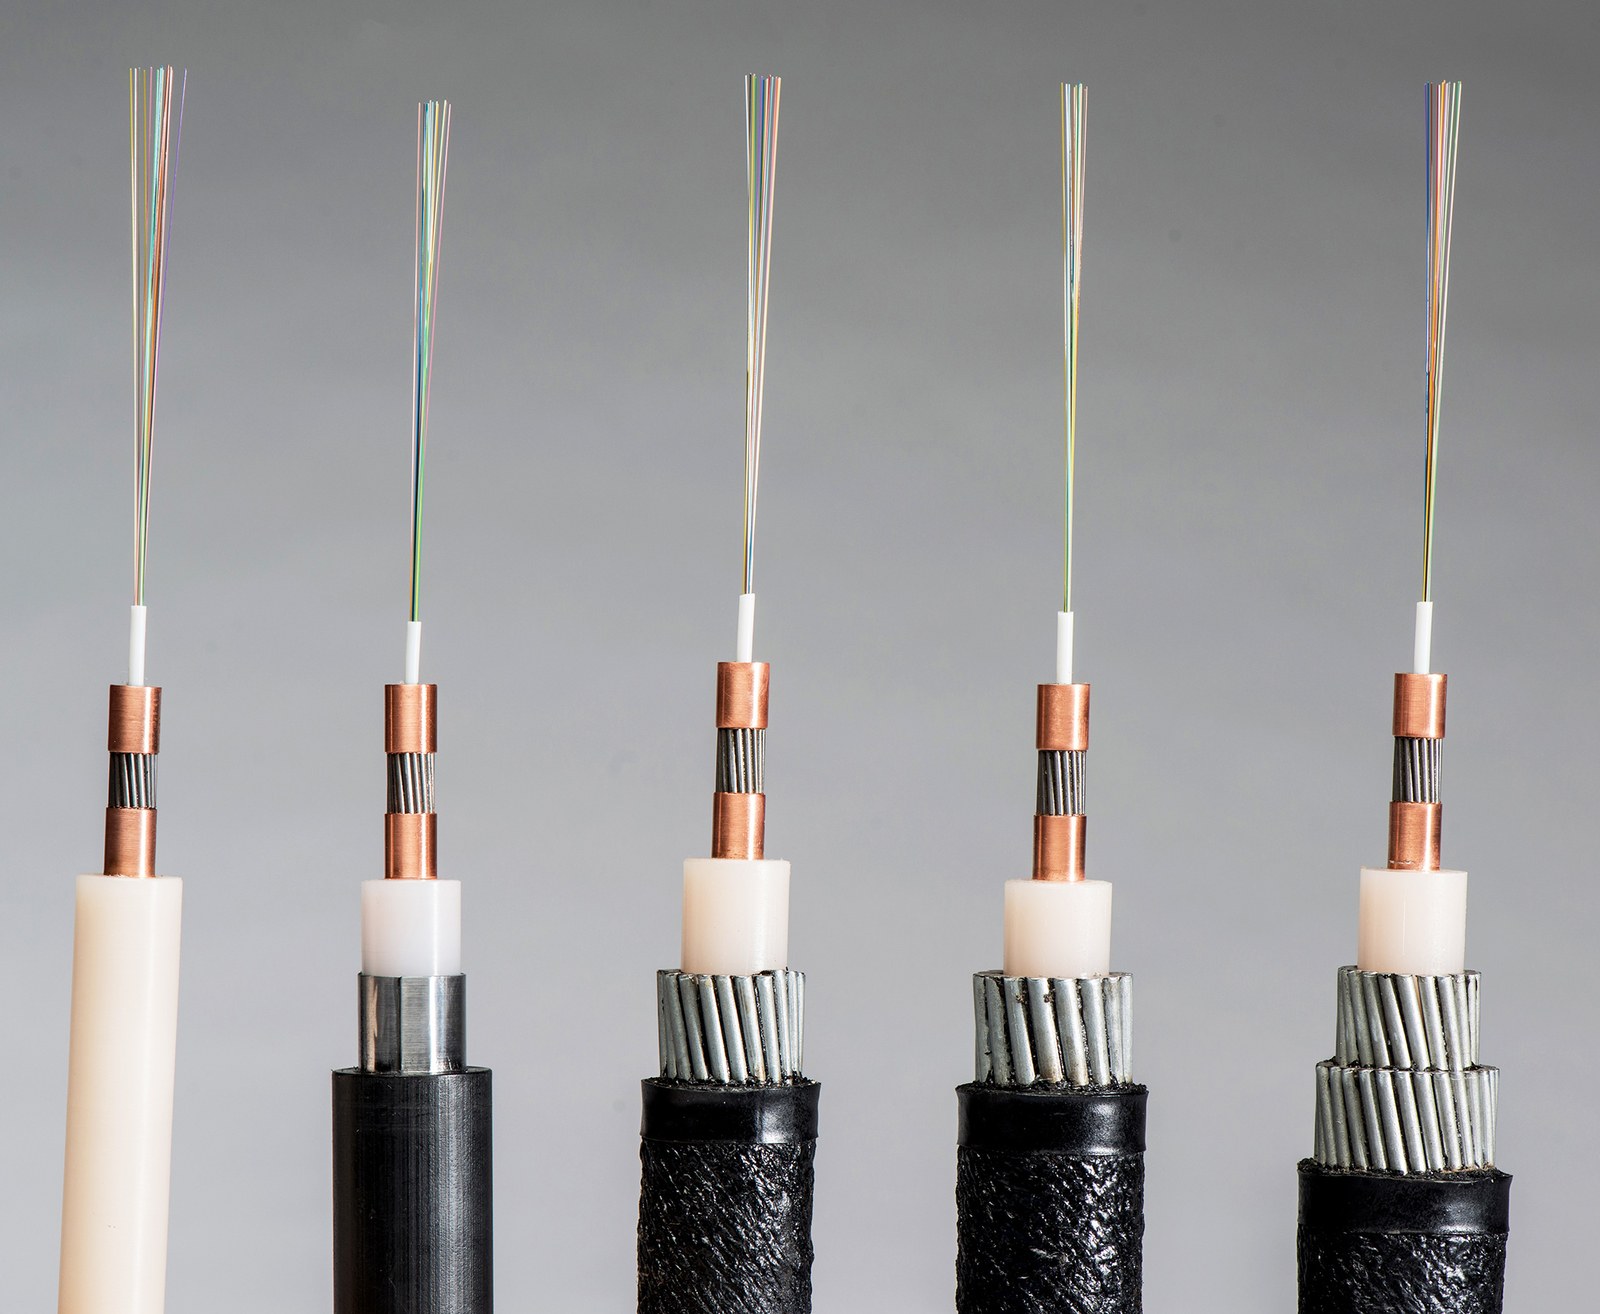 NEC выпустила подводный кабель с рекордными 20 парами оптических волокон - 4